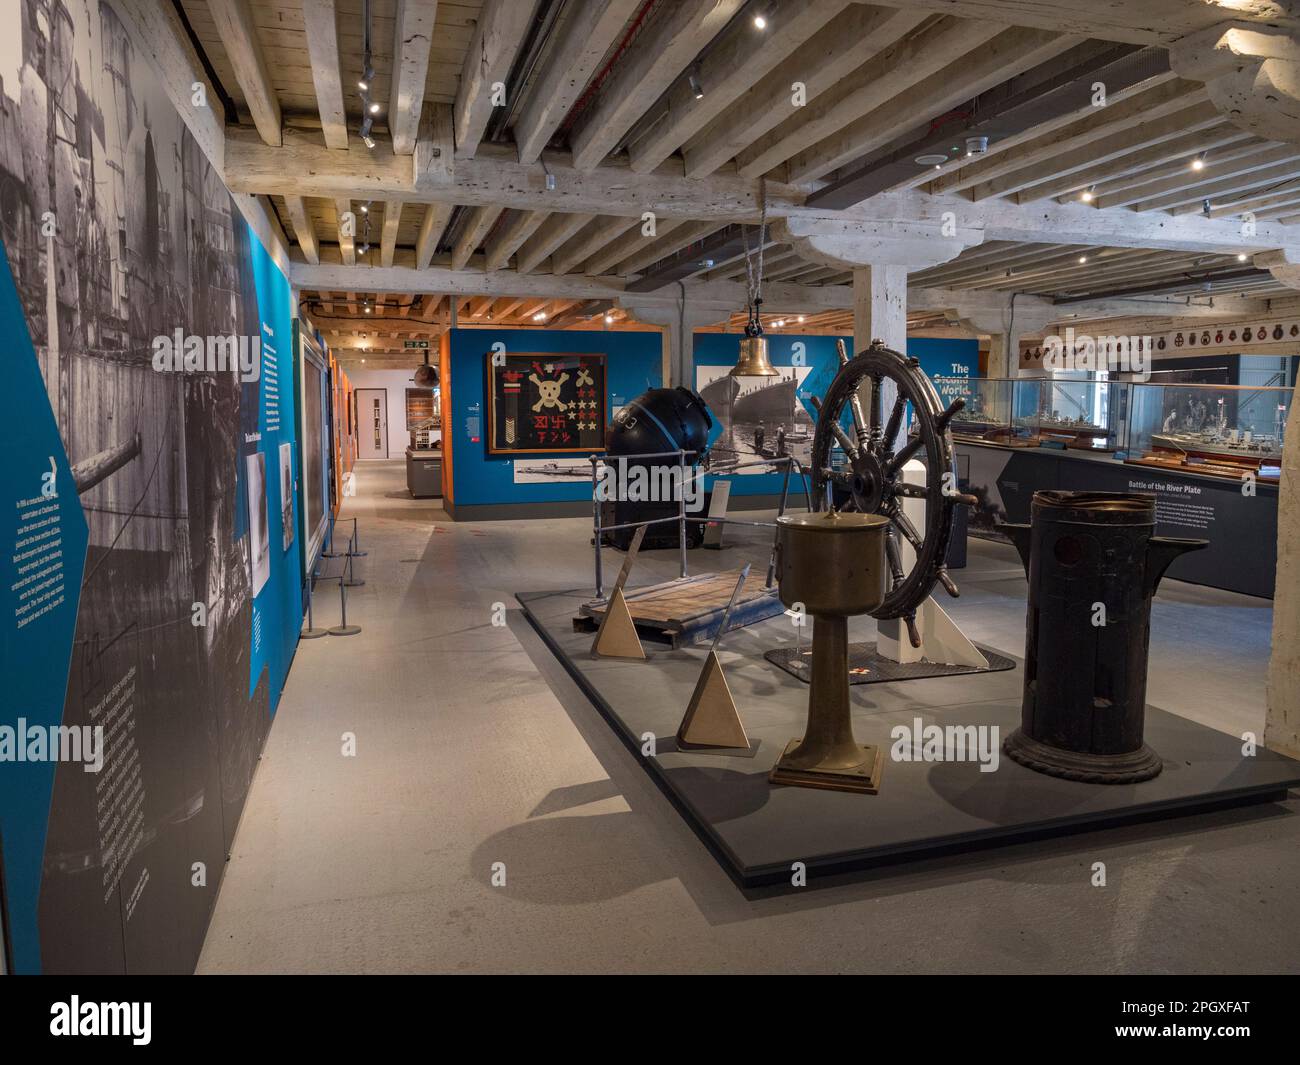 Vue générale à l'intérieur de l'exposition Steam, Steel & sous-marins, chantier naval historique de Chatham, Kent, Royaume-Uni. Banque D'Images